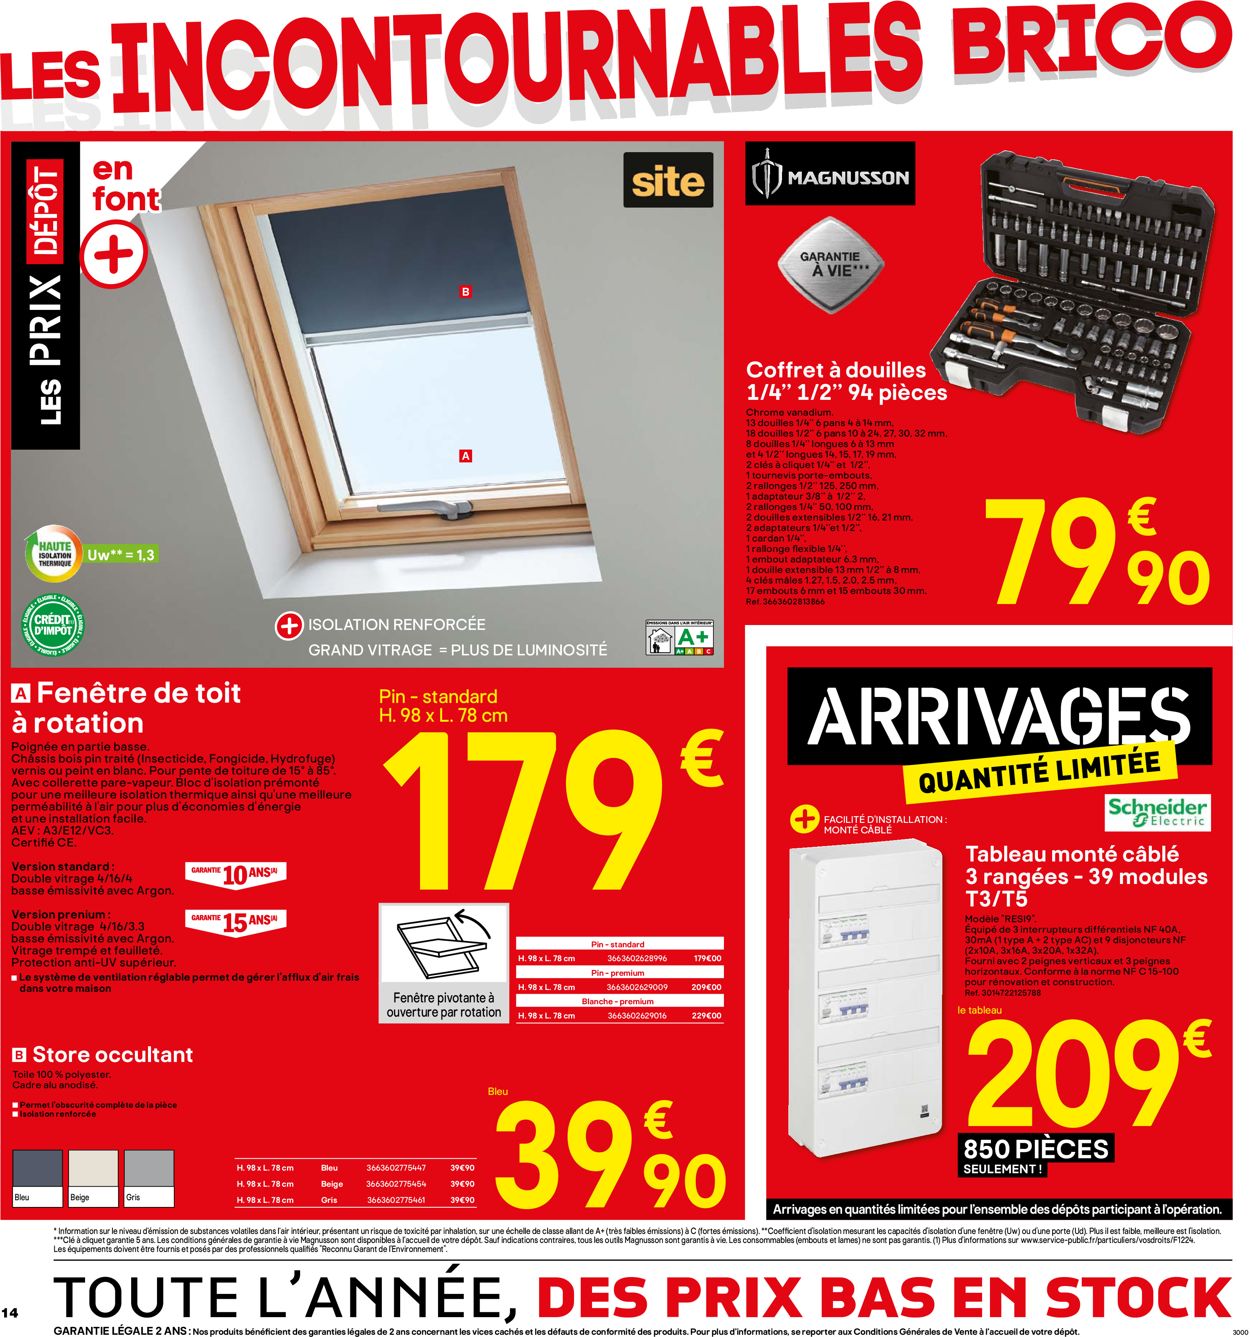 Brico Dépôt Catalogue - 20.09-03.10.2019 (Page 14)